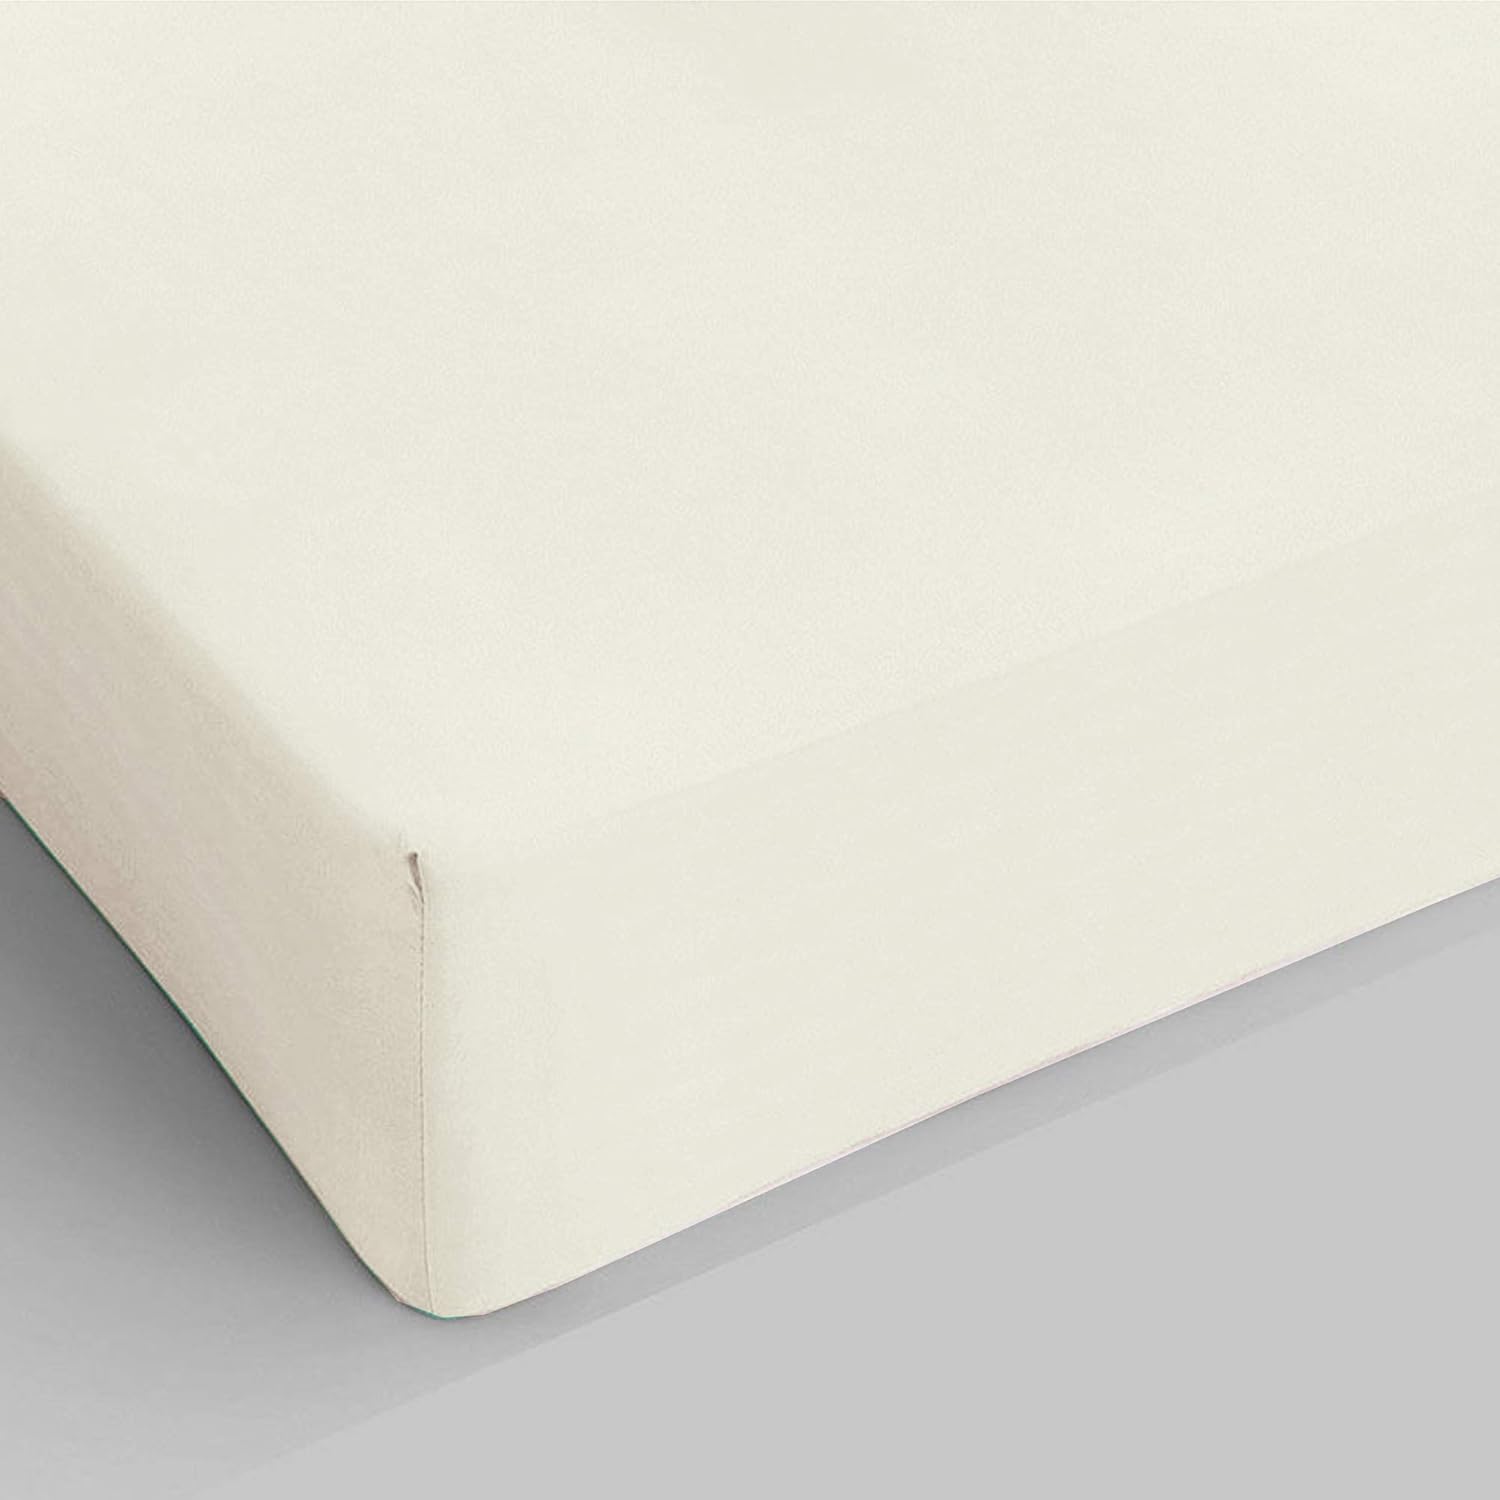 Giovanni Dolcinotti Bed Collection Spannbettlaken für Einzelbetten – 100 % Baumwolle – Anti-Milben, hypoallergen und atmungsaktiv – Hergestellt in Italien